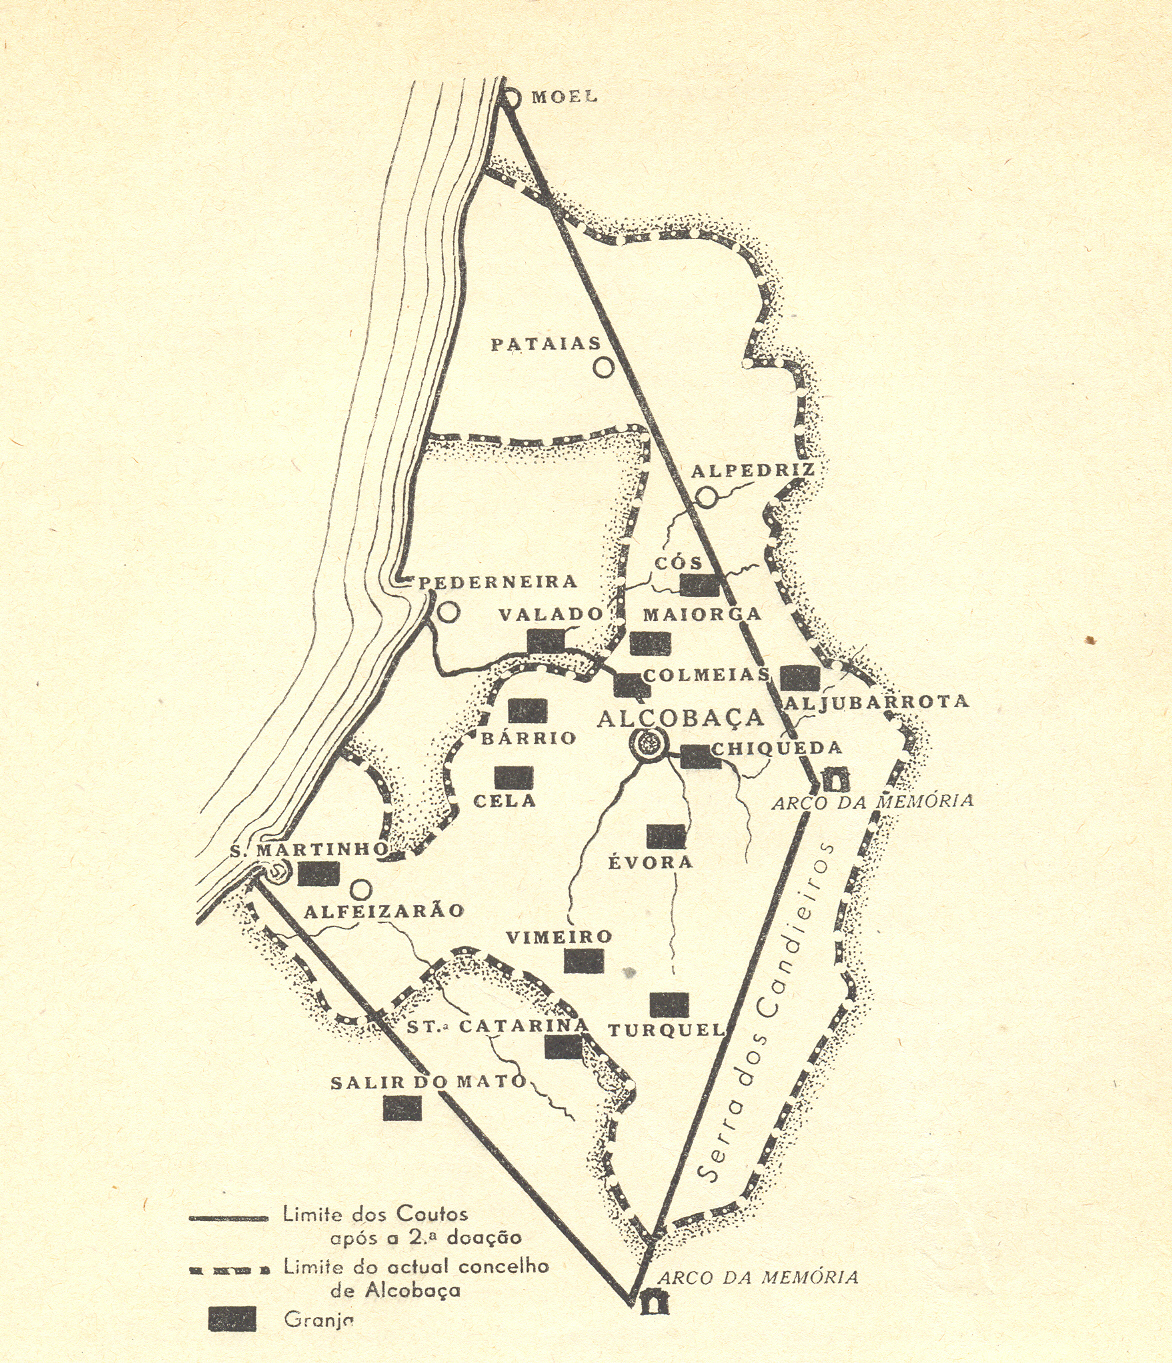 Mapa das Coutadas do Mosteiro de Alcobaça após a segunda doação do Rei à Ordem de Císter.